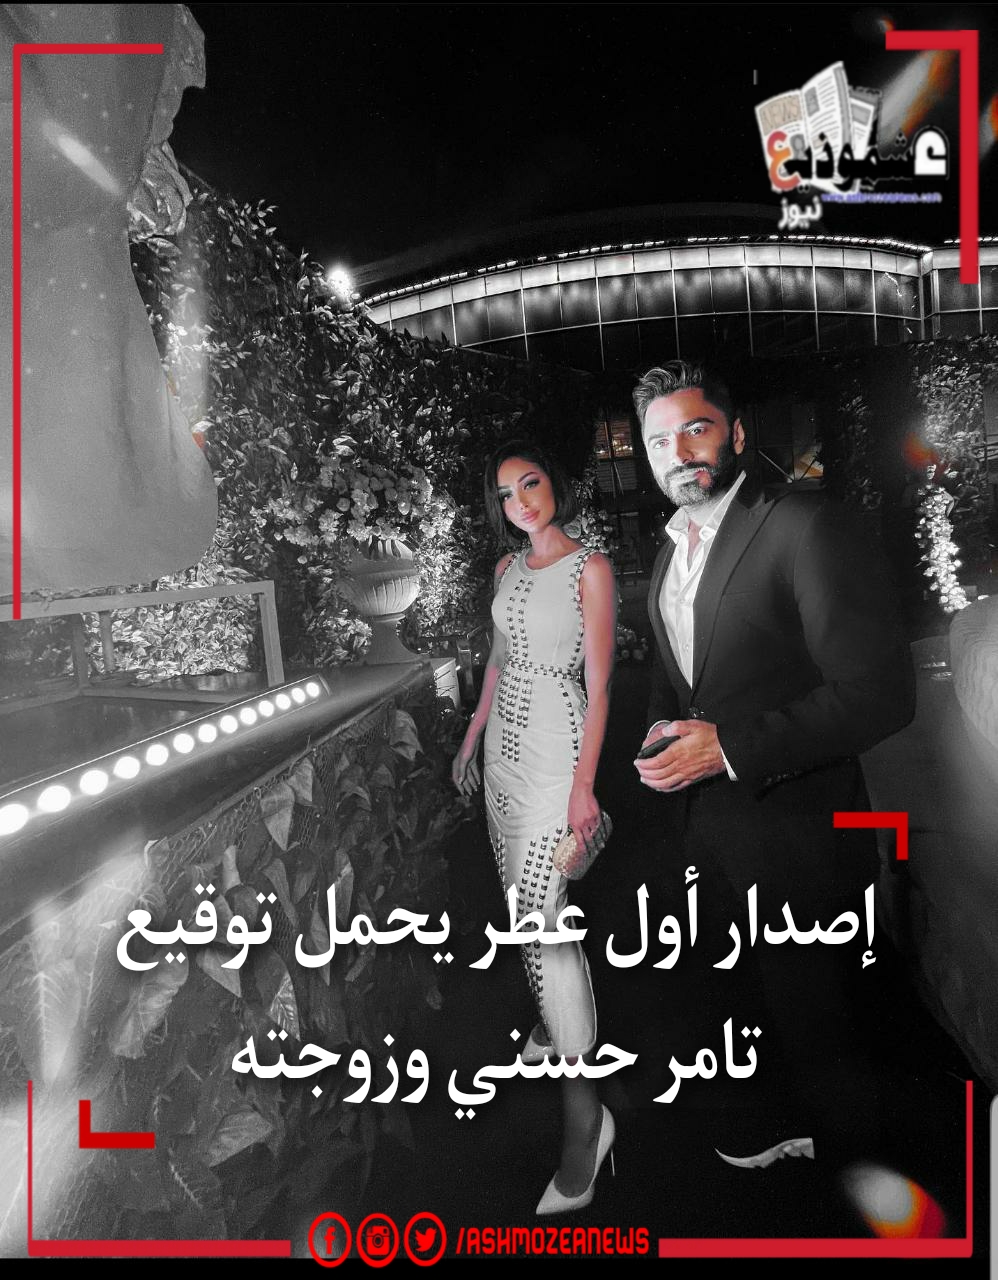 إصدار أول عطر يحمل توقيع تامر حسني وزوجته